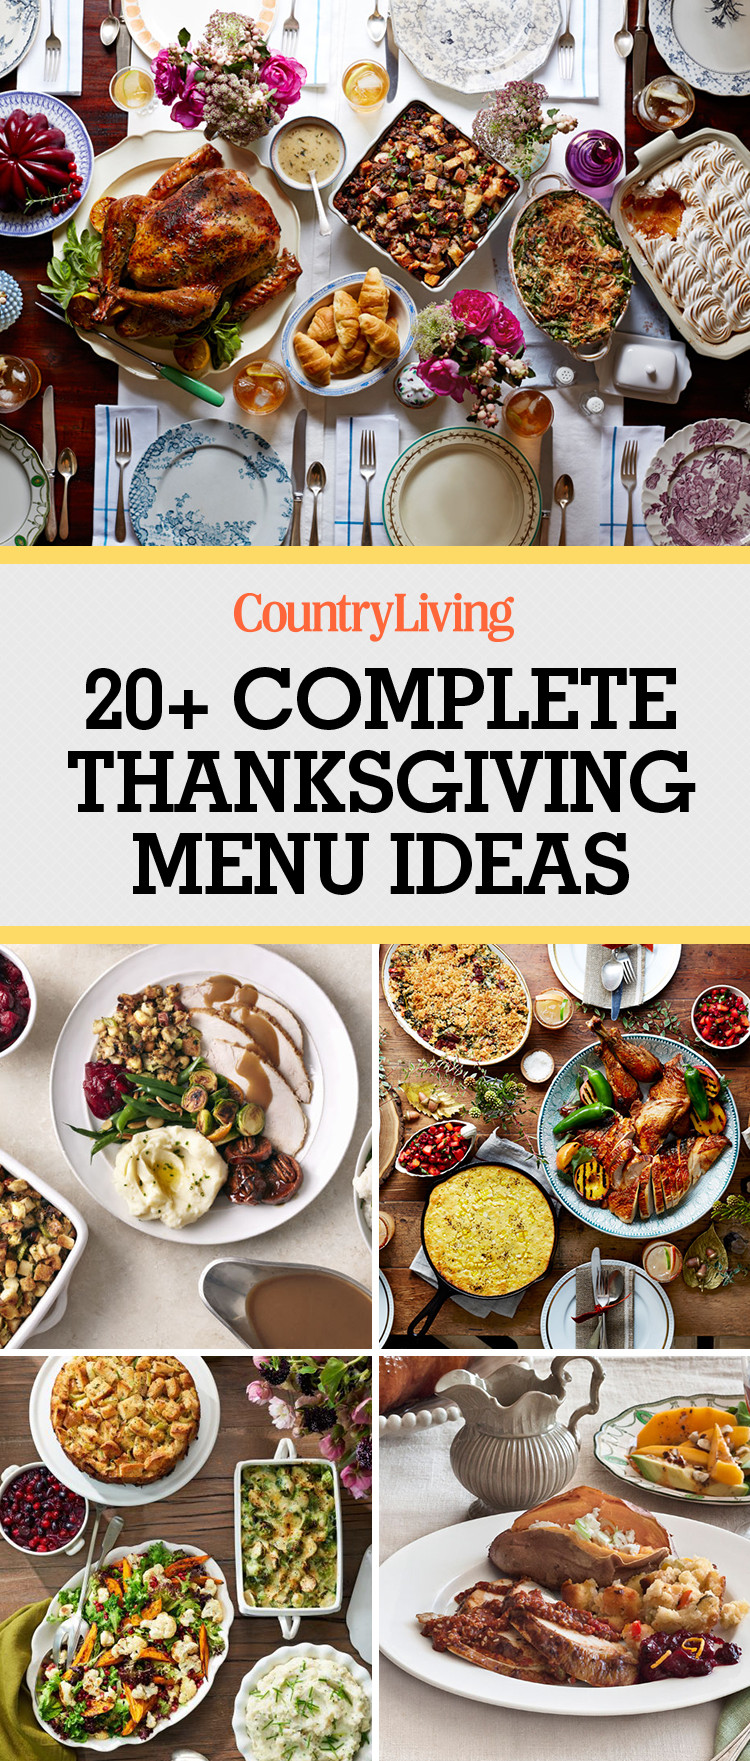 Dinner Menu Ideas
 26 Thanksgiving Menu Ideas Thanksgiving Dinner Menu Recipes